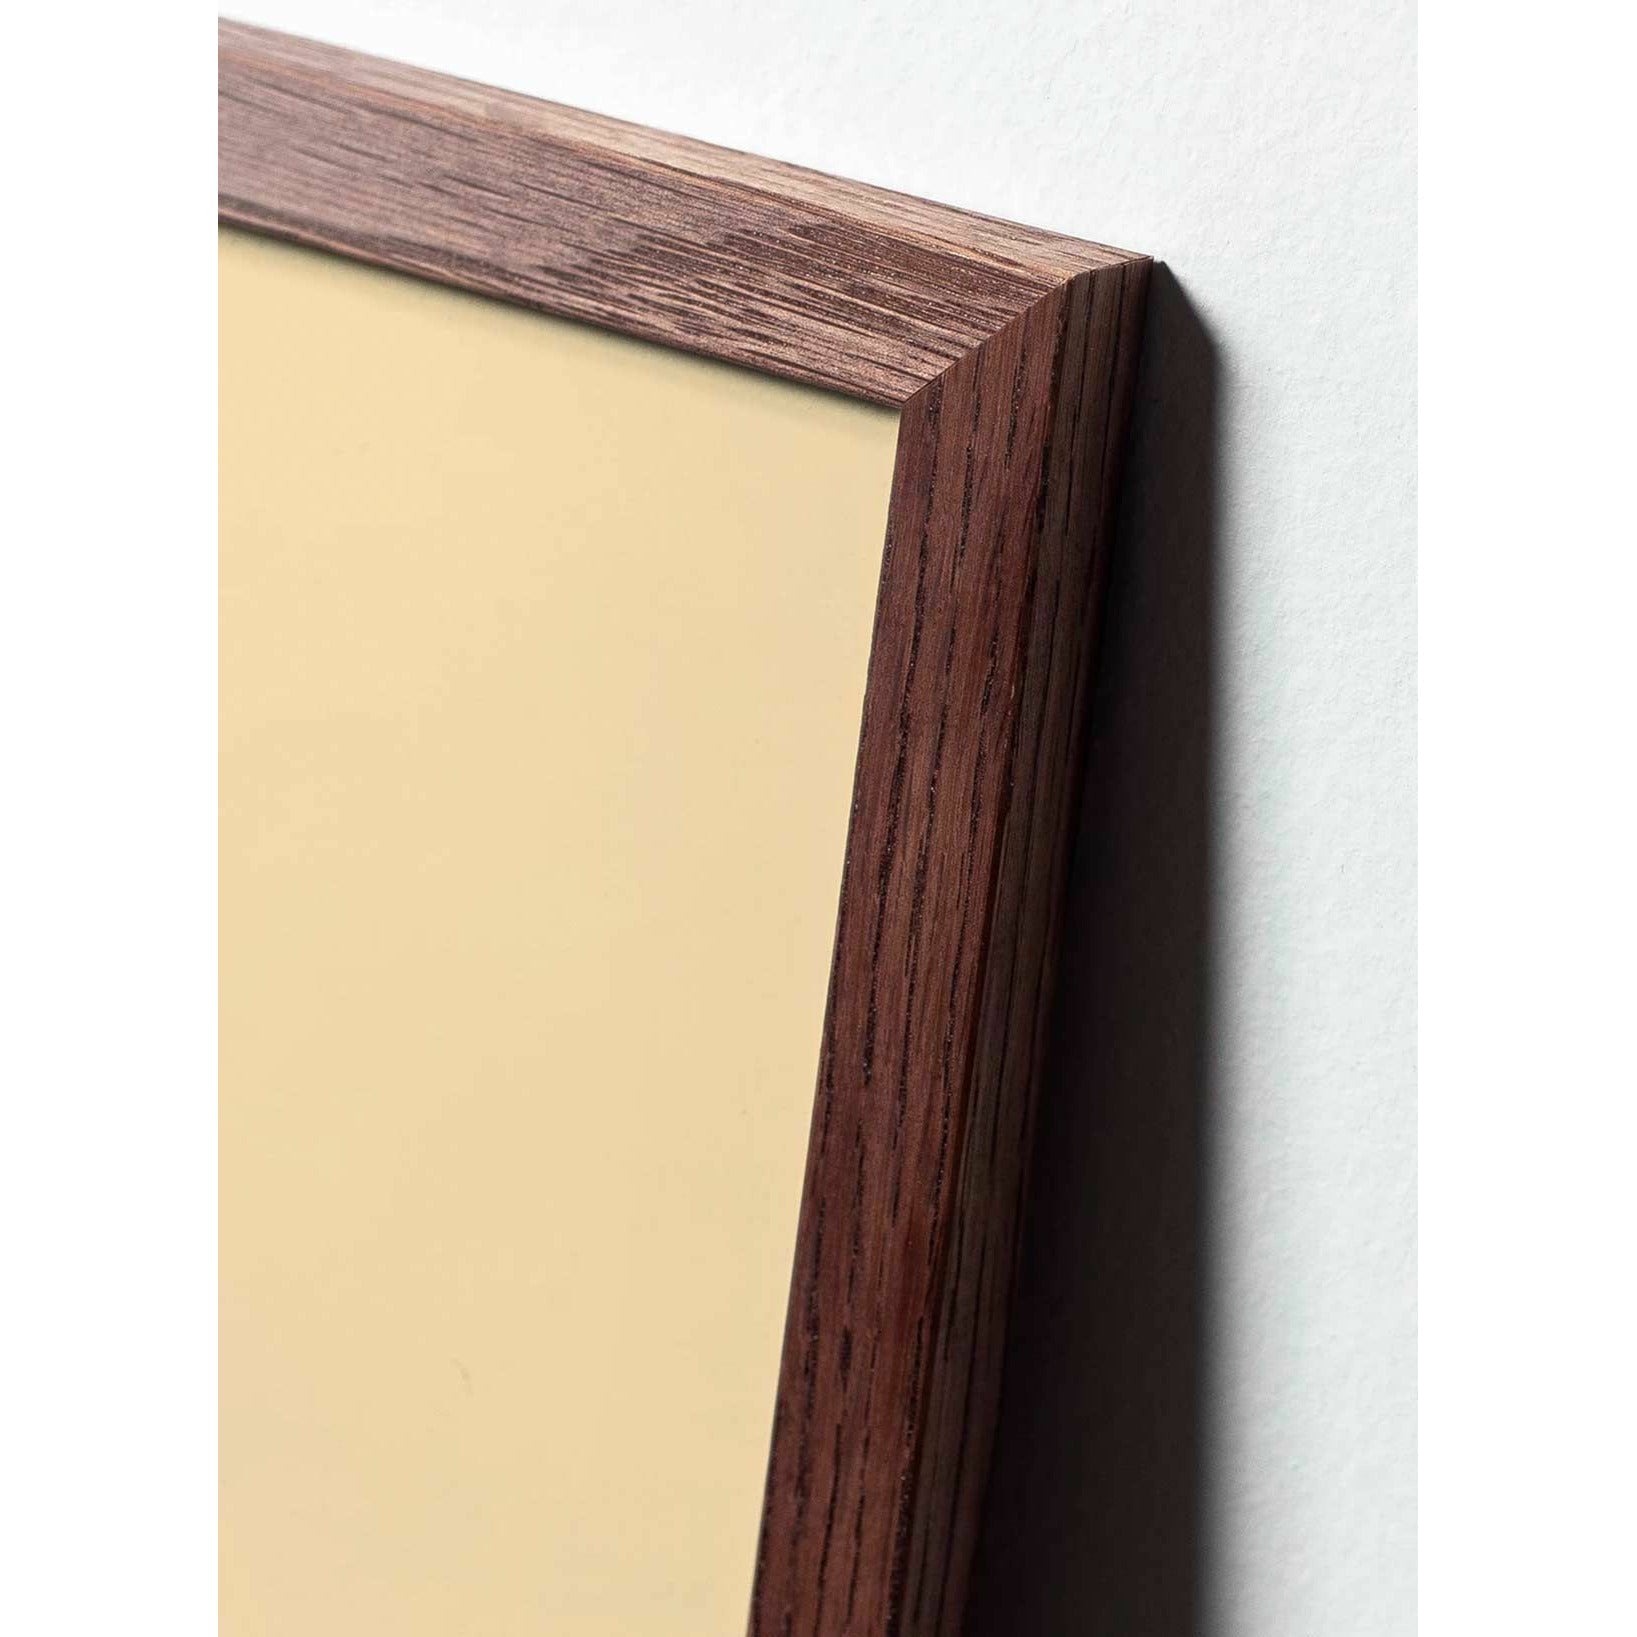 Póster de figuras de huevo de creación, marco hecho de madera oscura 50x70 cm, marrón